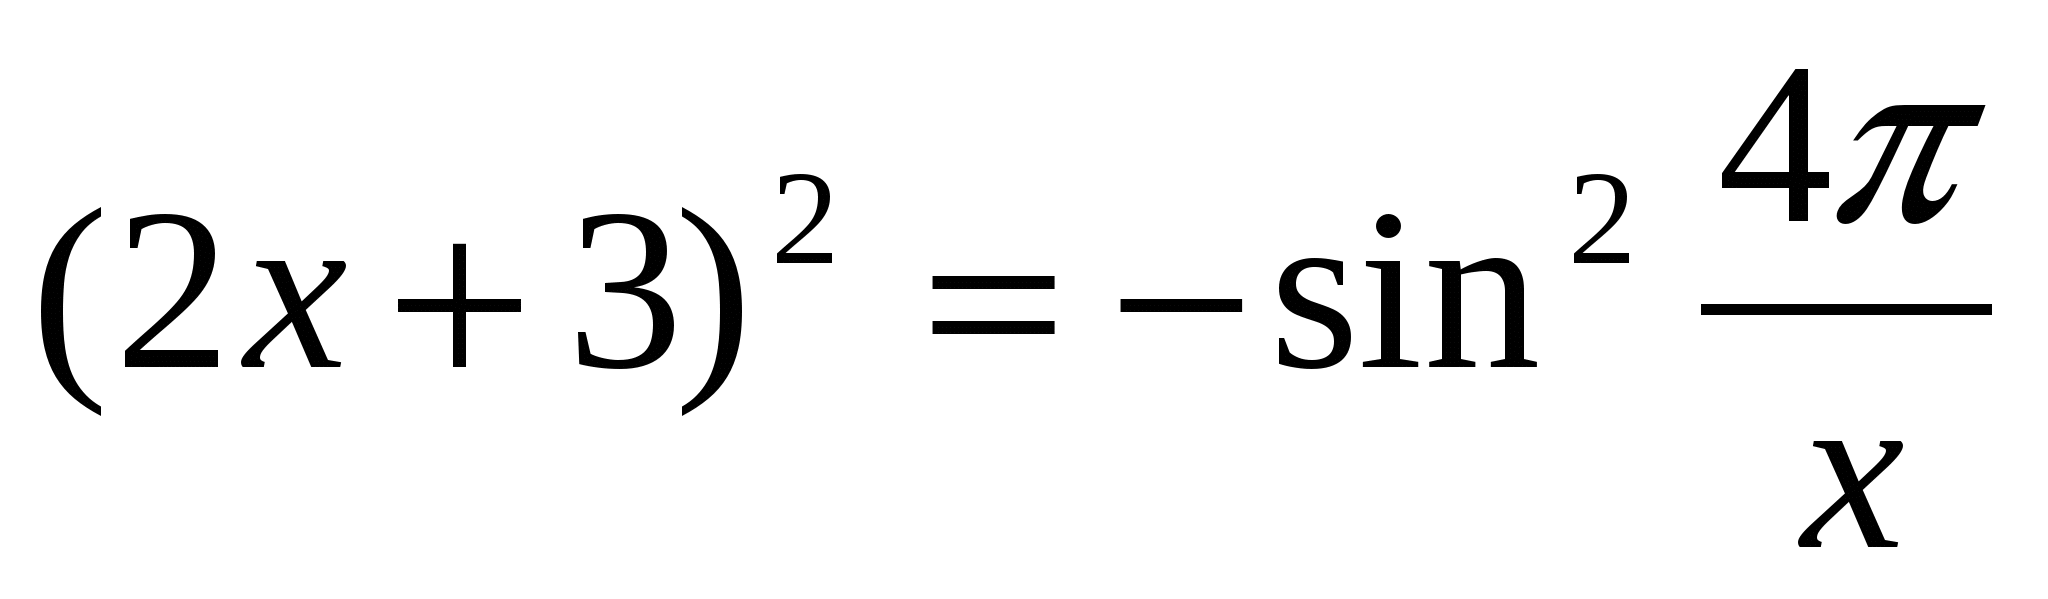 По математике на тему Функциональный метод решения уравнений и неравенств(10 класс)